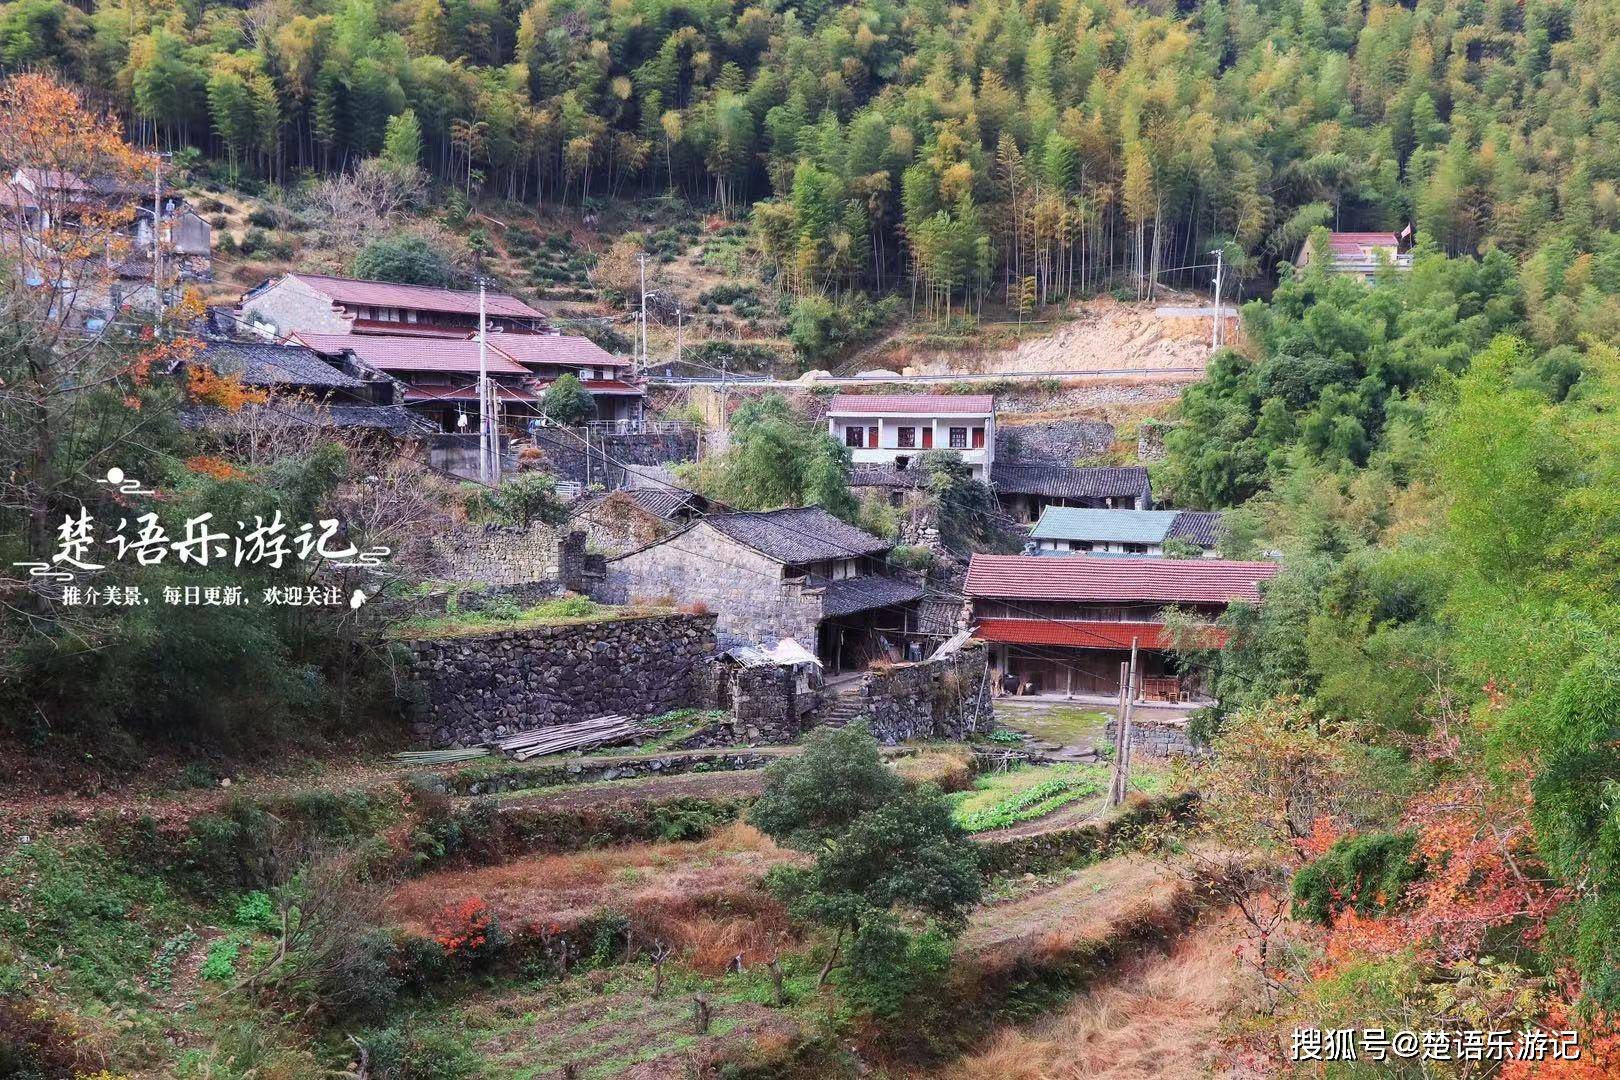 王石坑村形成于清朝康熙年间,距今有300多年的历史,村民主要姓褚